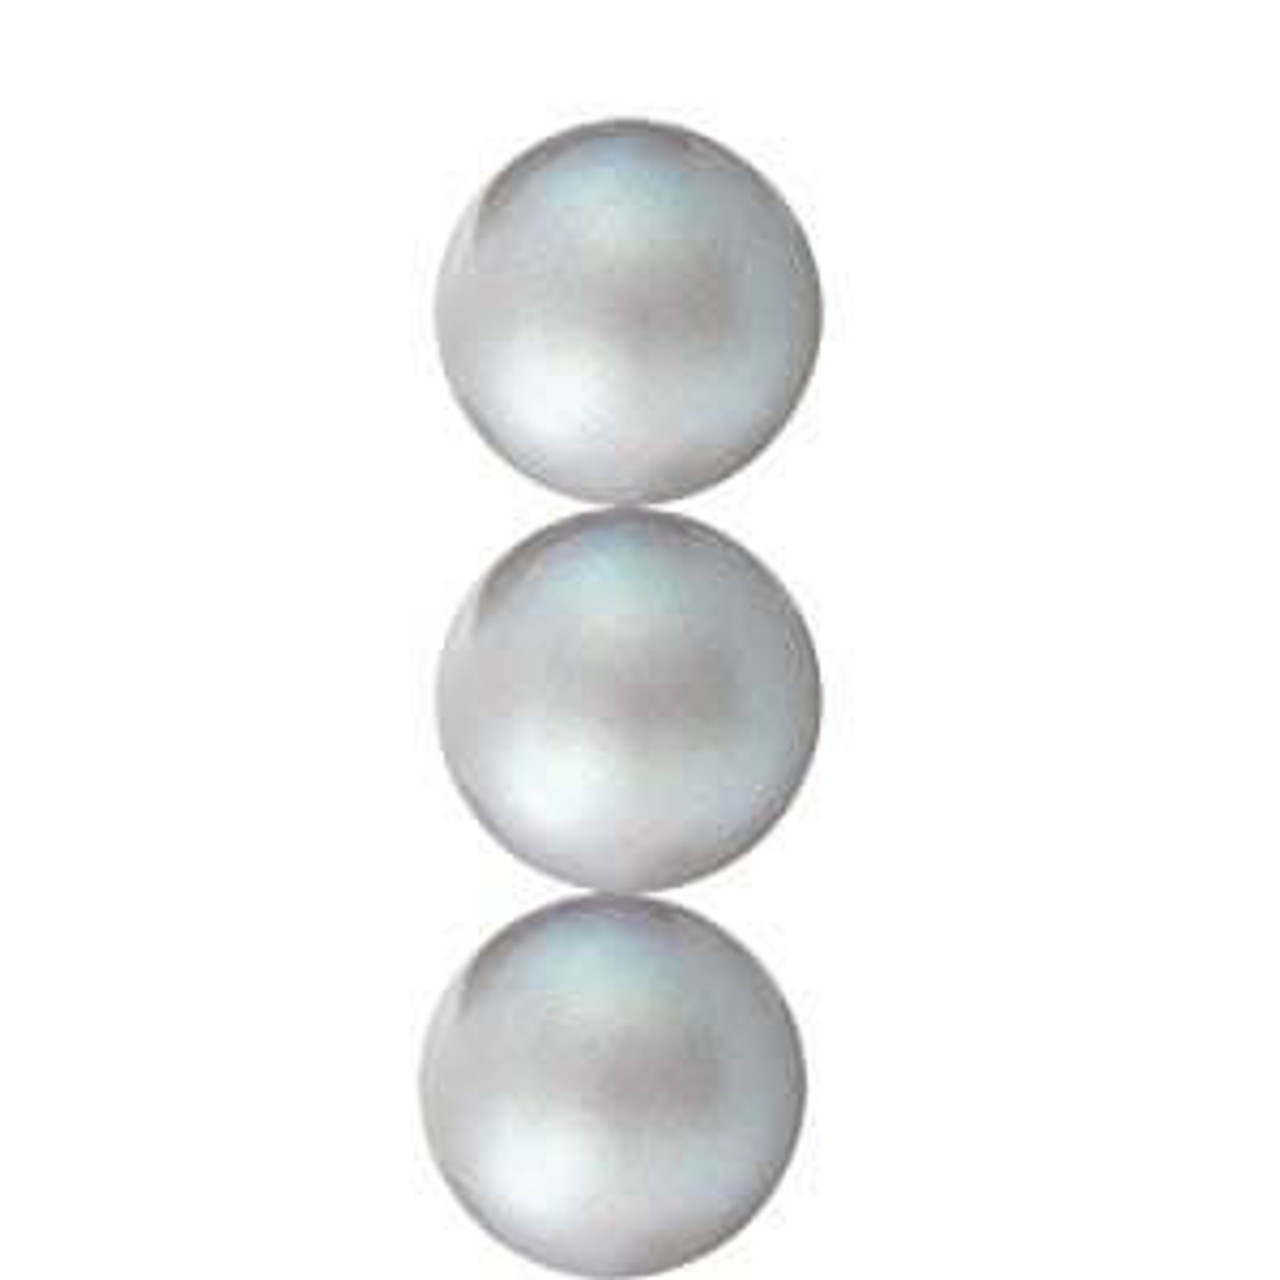 Preciosa Maxima Nacre Pearls 4mm PEARLESCENT WHITE (Strand of 31)